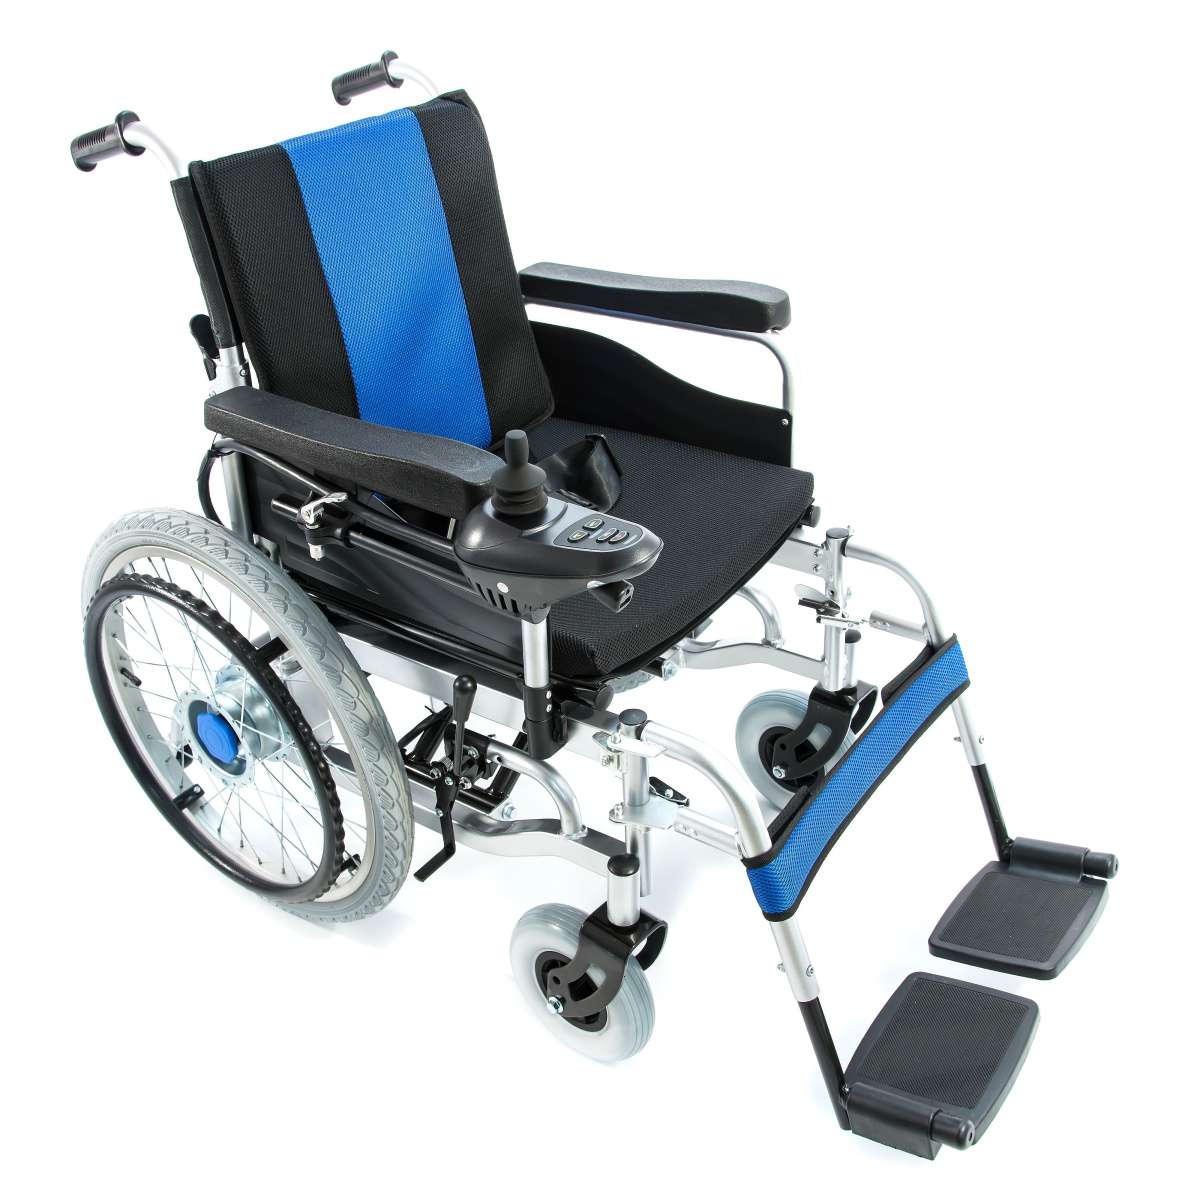 Кресло-коляска мега-Оптим fs101a с электроприводом. Электроколяска Армед fs123 43. Электроколяска Армед fs101a. Коляска мега Оптим с электроприводом. Коляски инвалидные с приводом цена